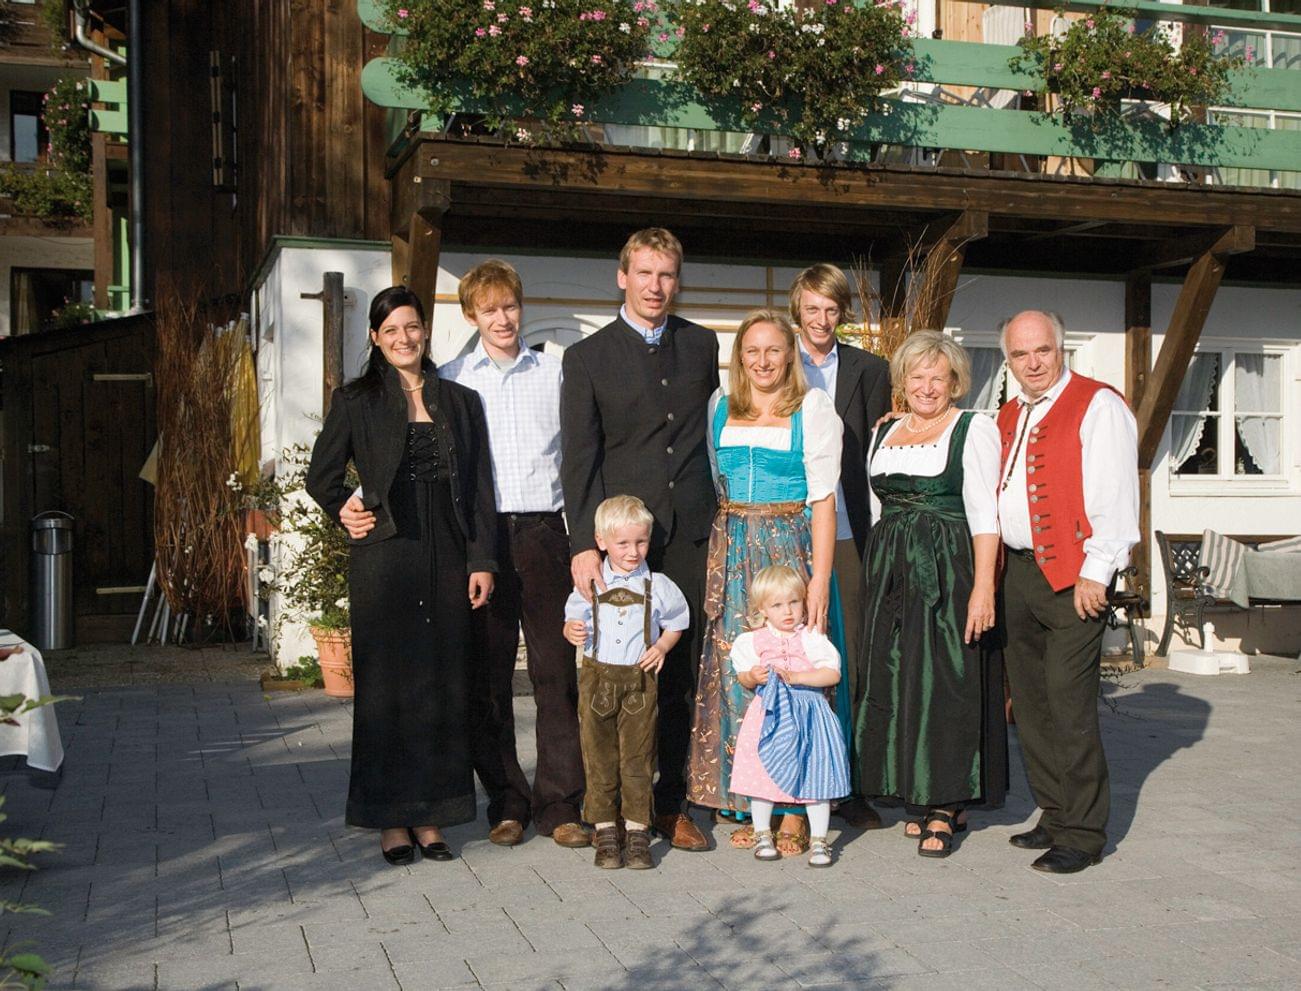 The Alphotel's host family